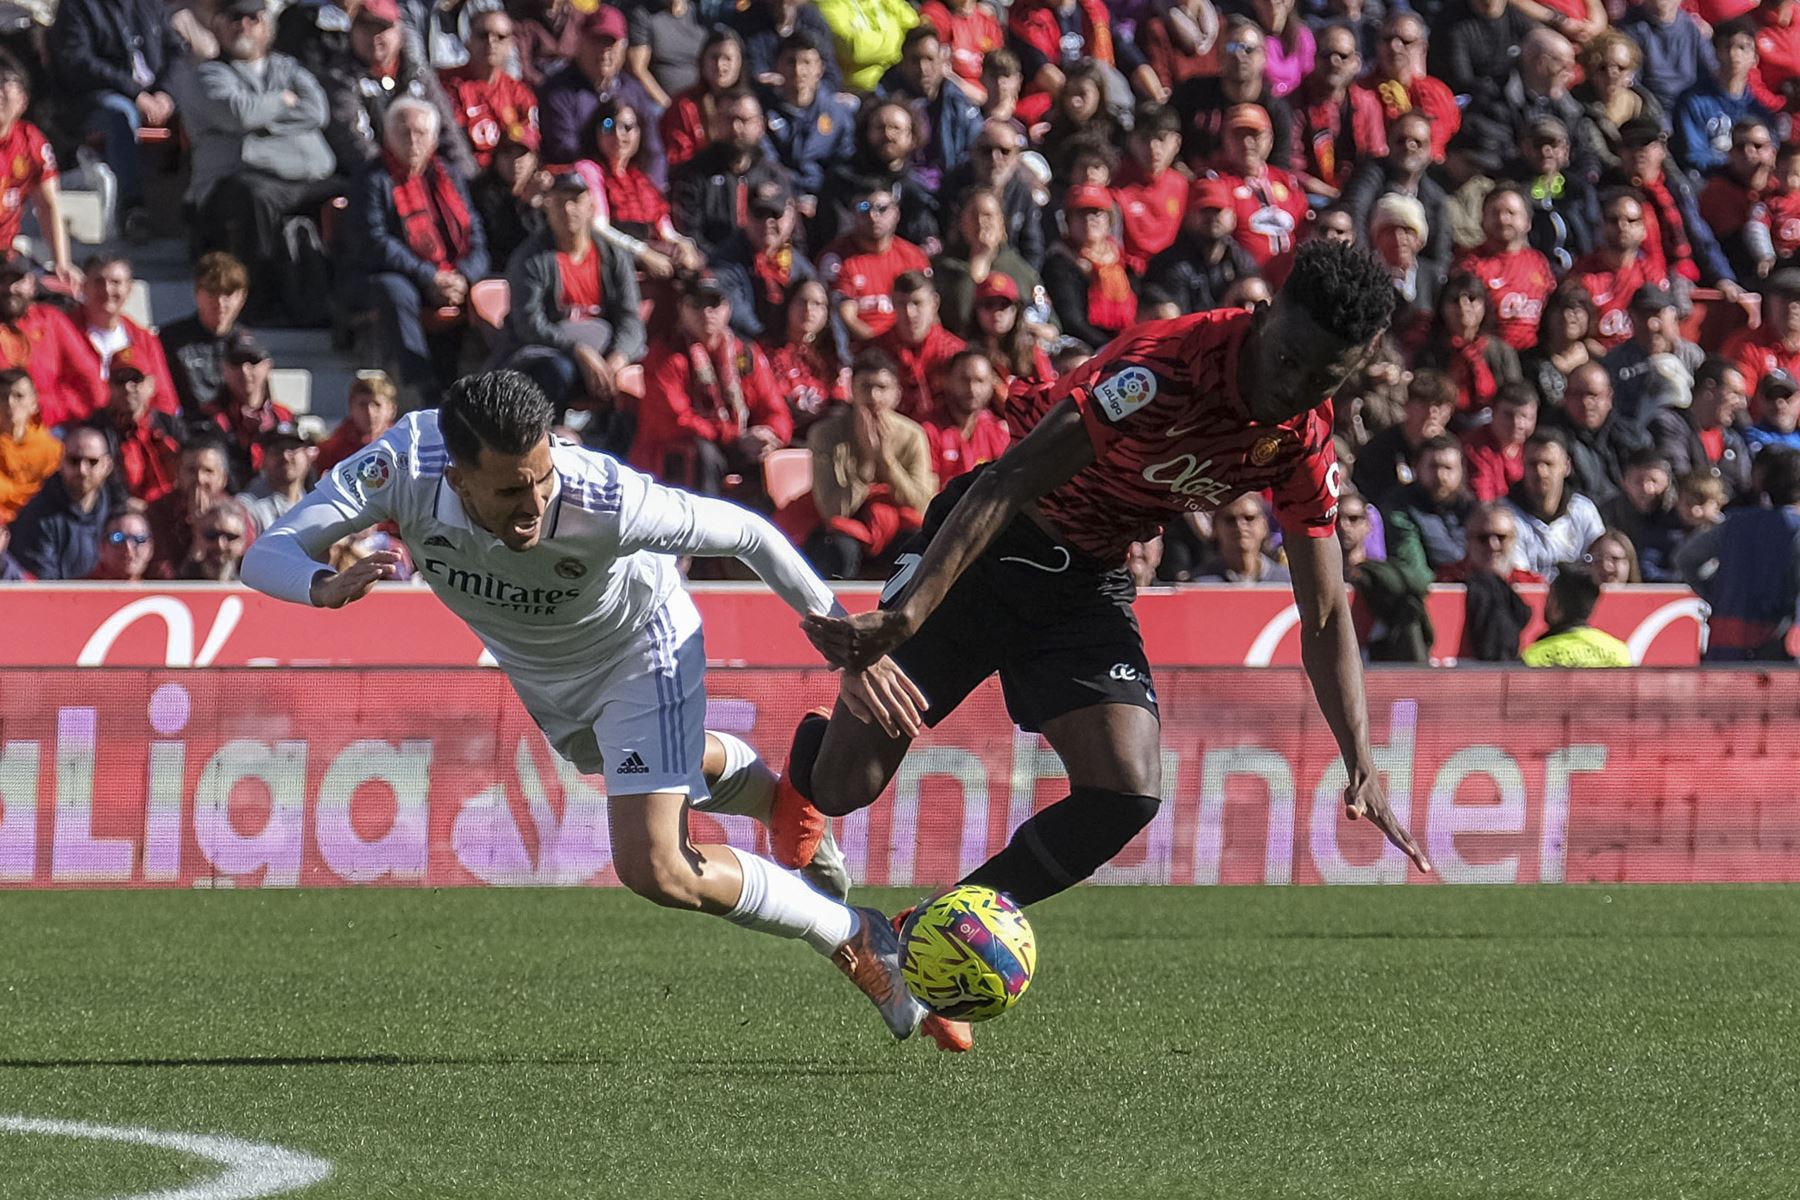 El centrocampista del Real Madrid Dani Ceballos  y el del Mallorca Idrissu Baba disputan el balón durante el Partido de La Liga que disputan el Mallorca y el Real Madrid en el estadio de Son Moix.
Foto: EFE